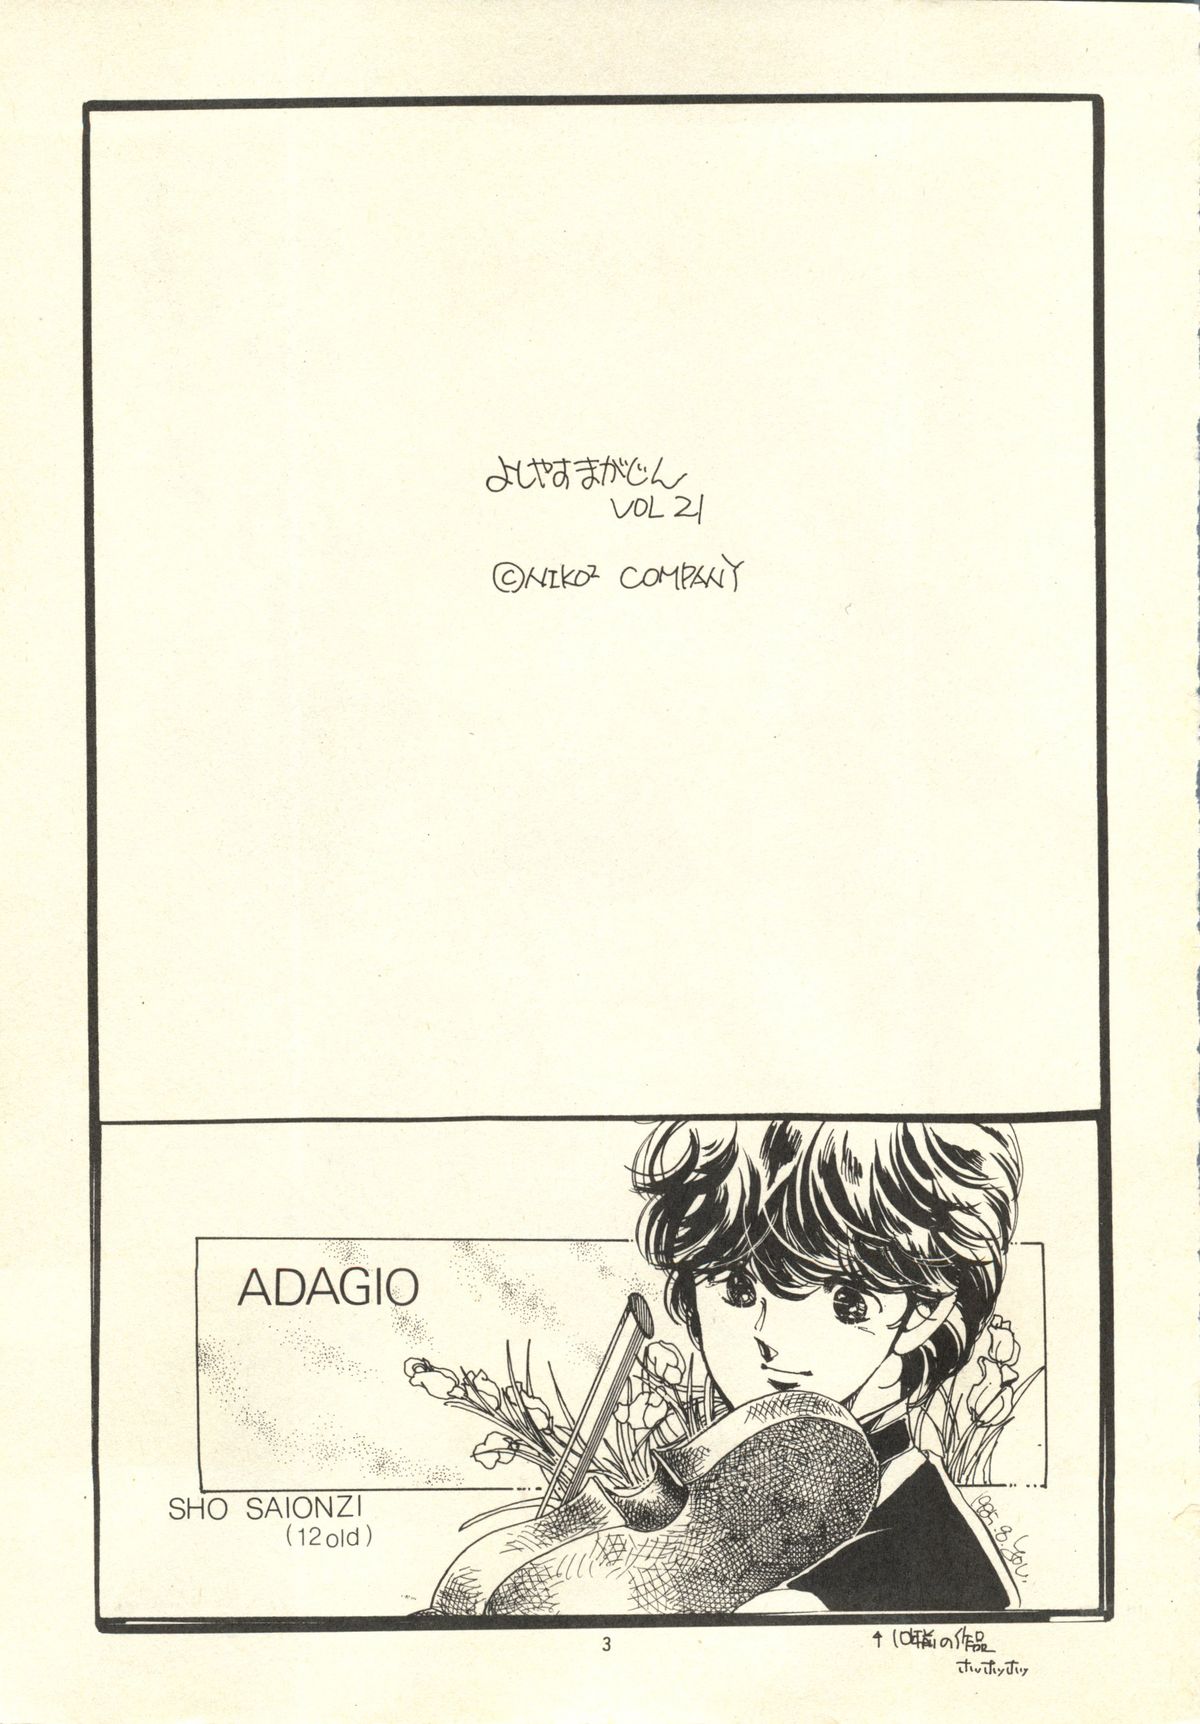 [Nico Nico Company] Yoshimaga Vol. 21 (original) [にこにこＣＯＭＰＡＮＹ (篁よしやす)] よしやすまがじん　ＶＯＬ．２１ (オリジナル)